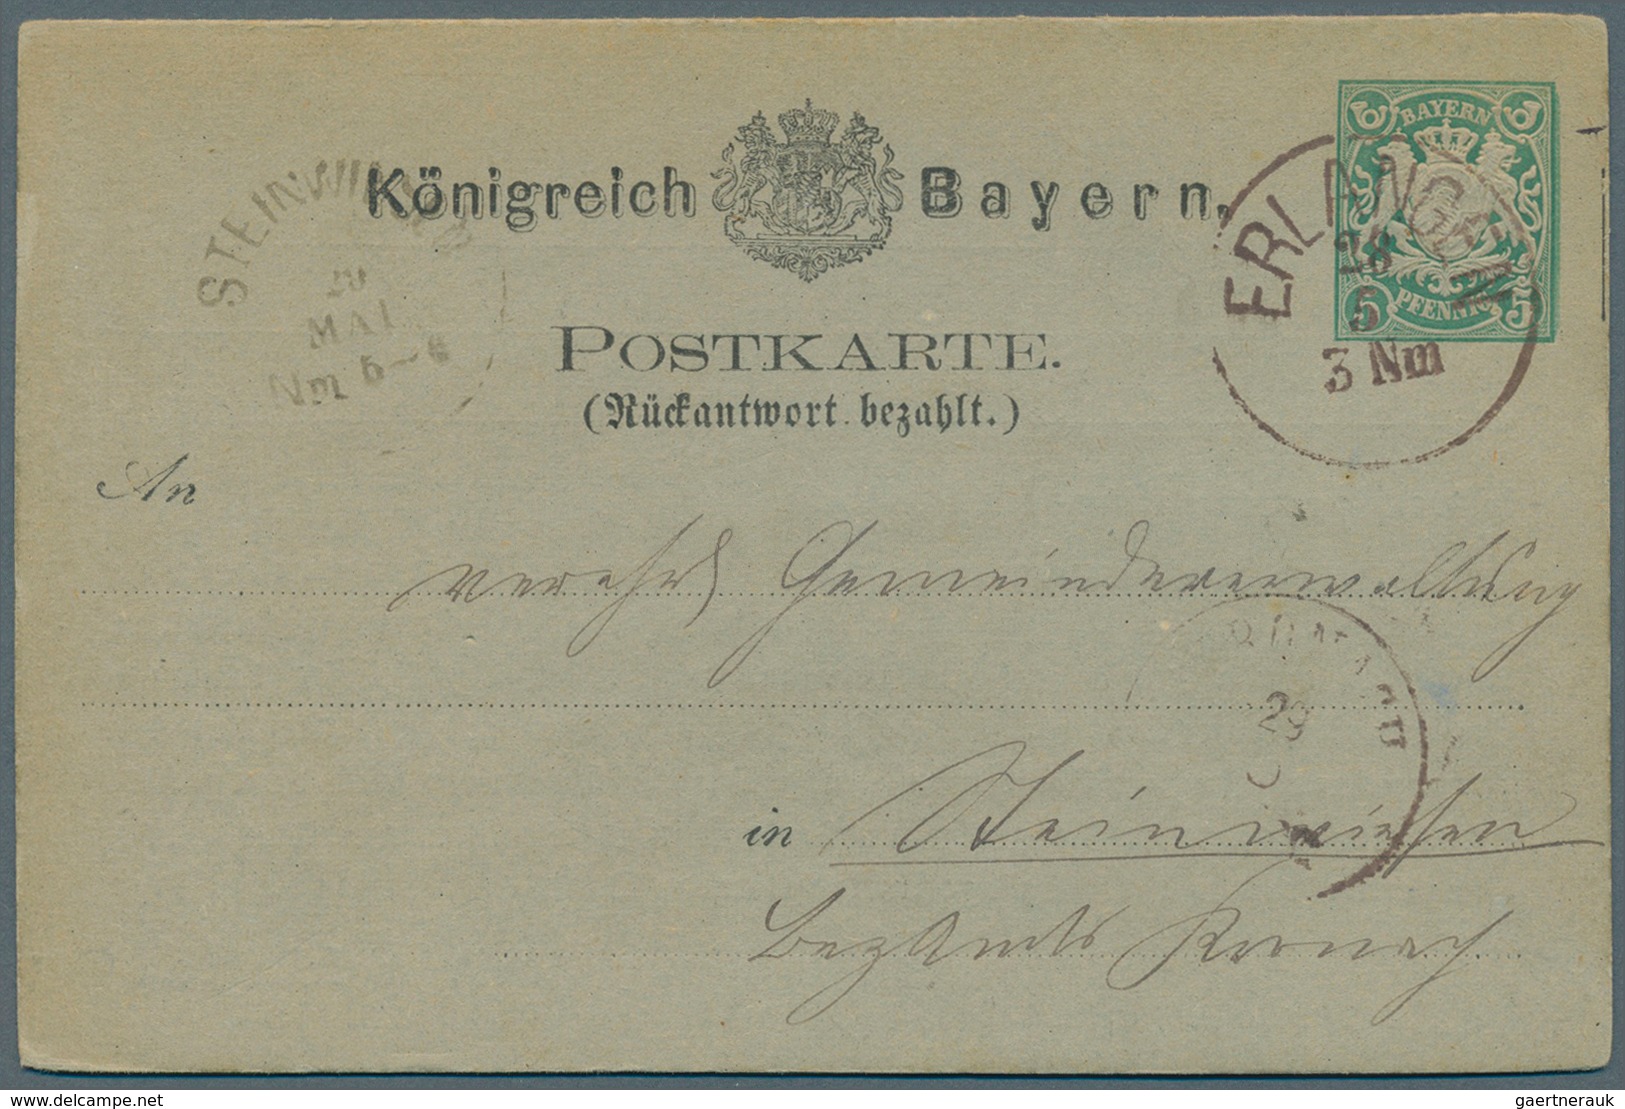 31229 Bayern - Ganzsachen: 1873/1903. Nette Sammlung von 35 gebrauchten Postkarten. Dabei sind viele gute